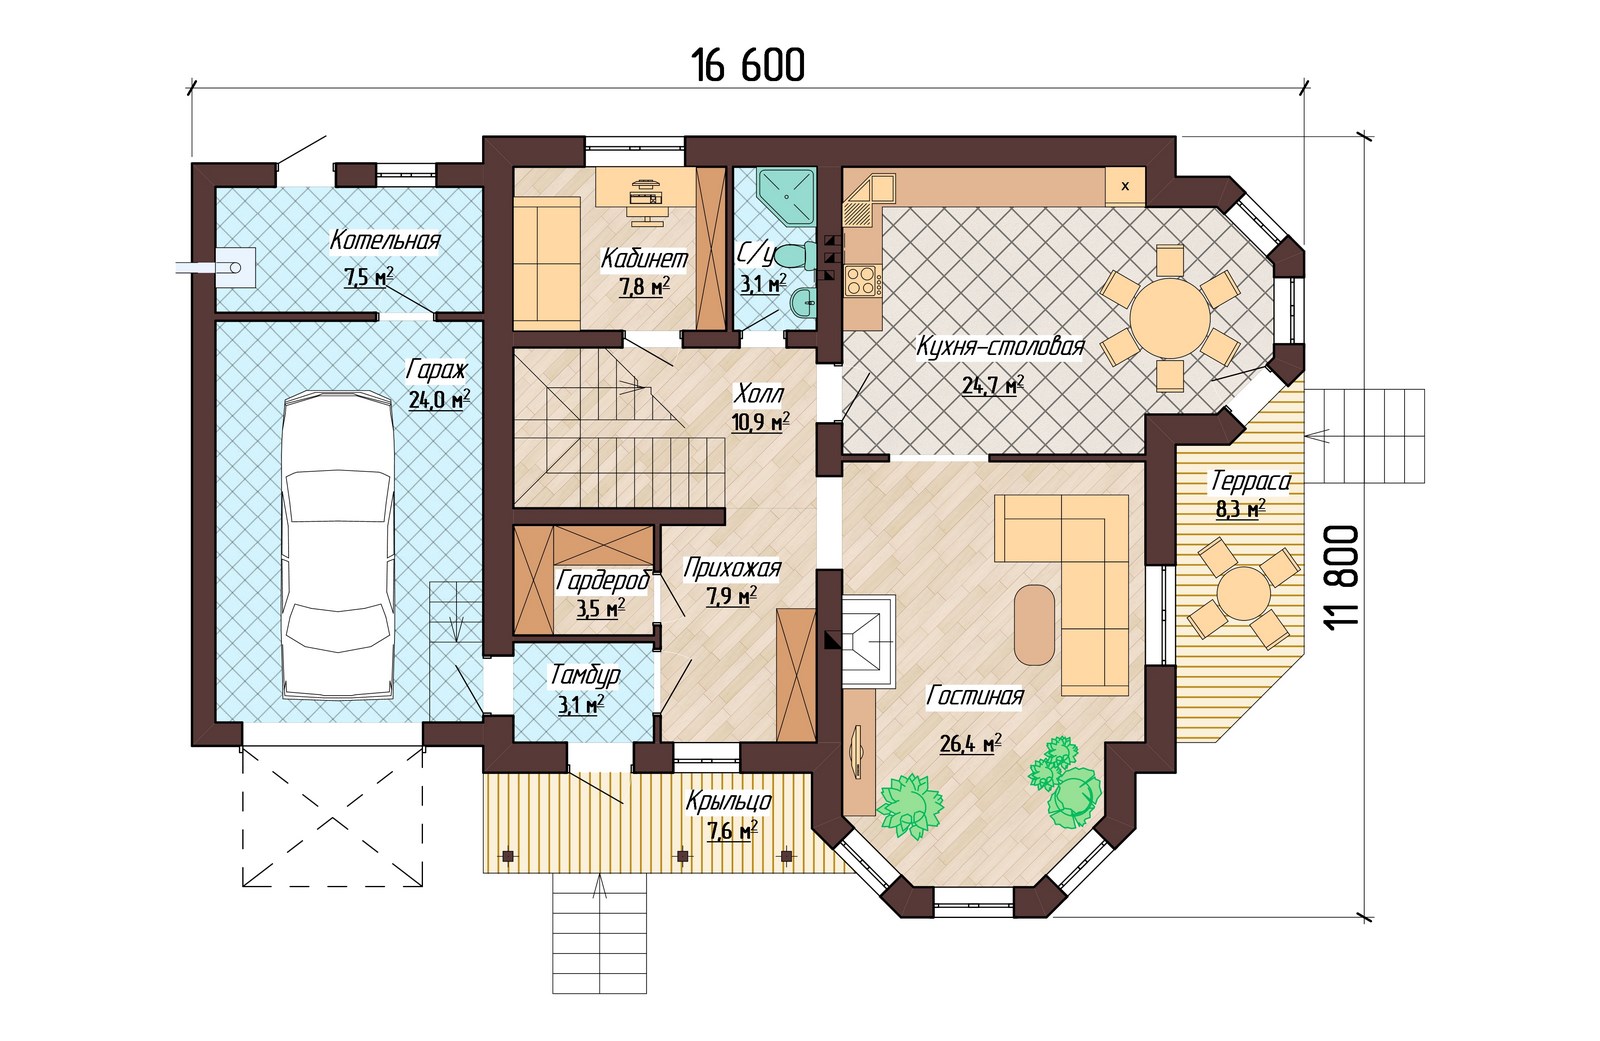 Типовая планировка уютного двухэтажного дома до 100 квм На втором этаже 3 комнаты и ванная, подойдет для семьи из пяти человек